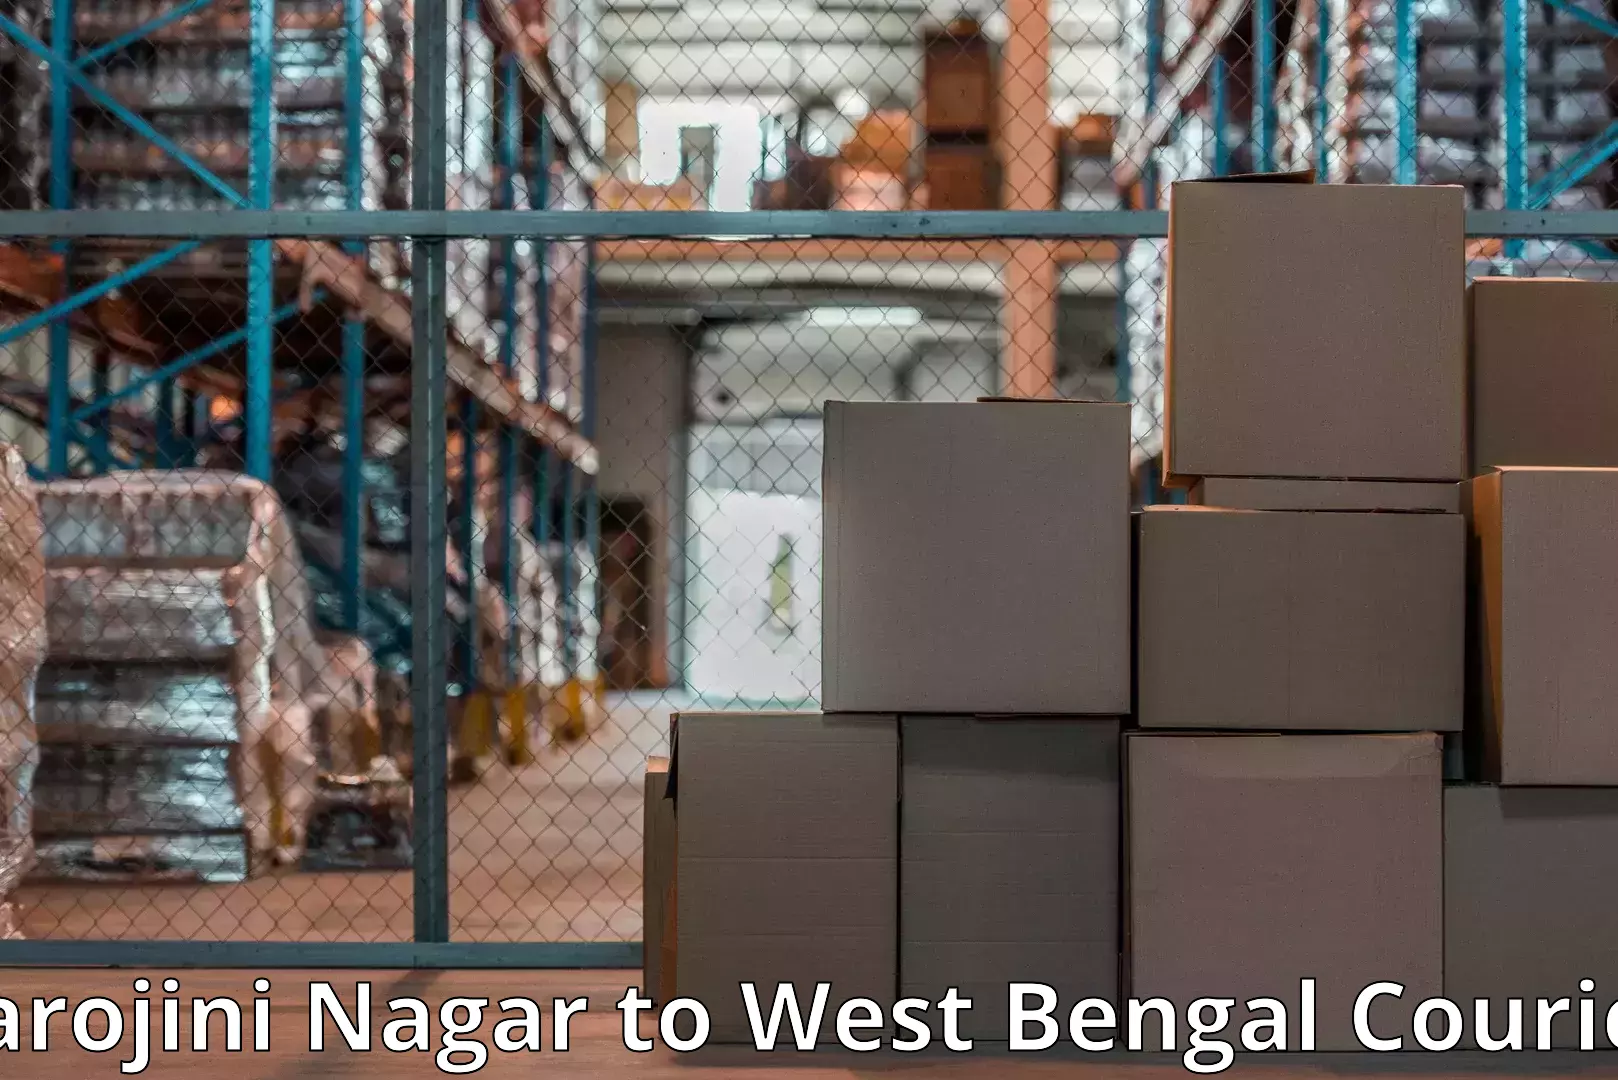 Furniture transport and logistics Sarojini Nagar to Fatepur